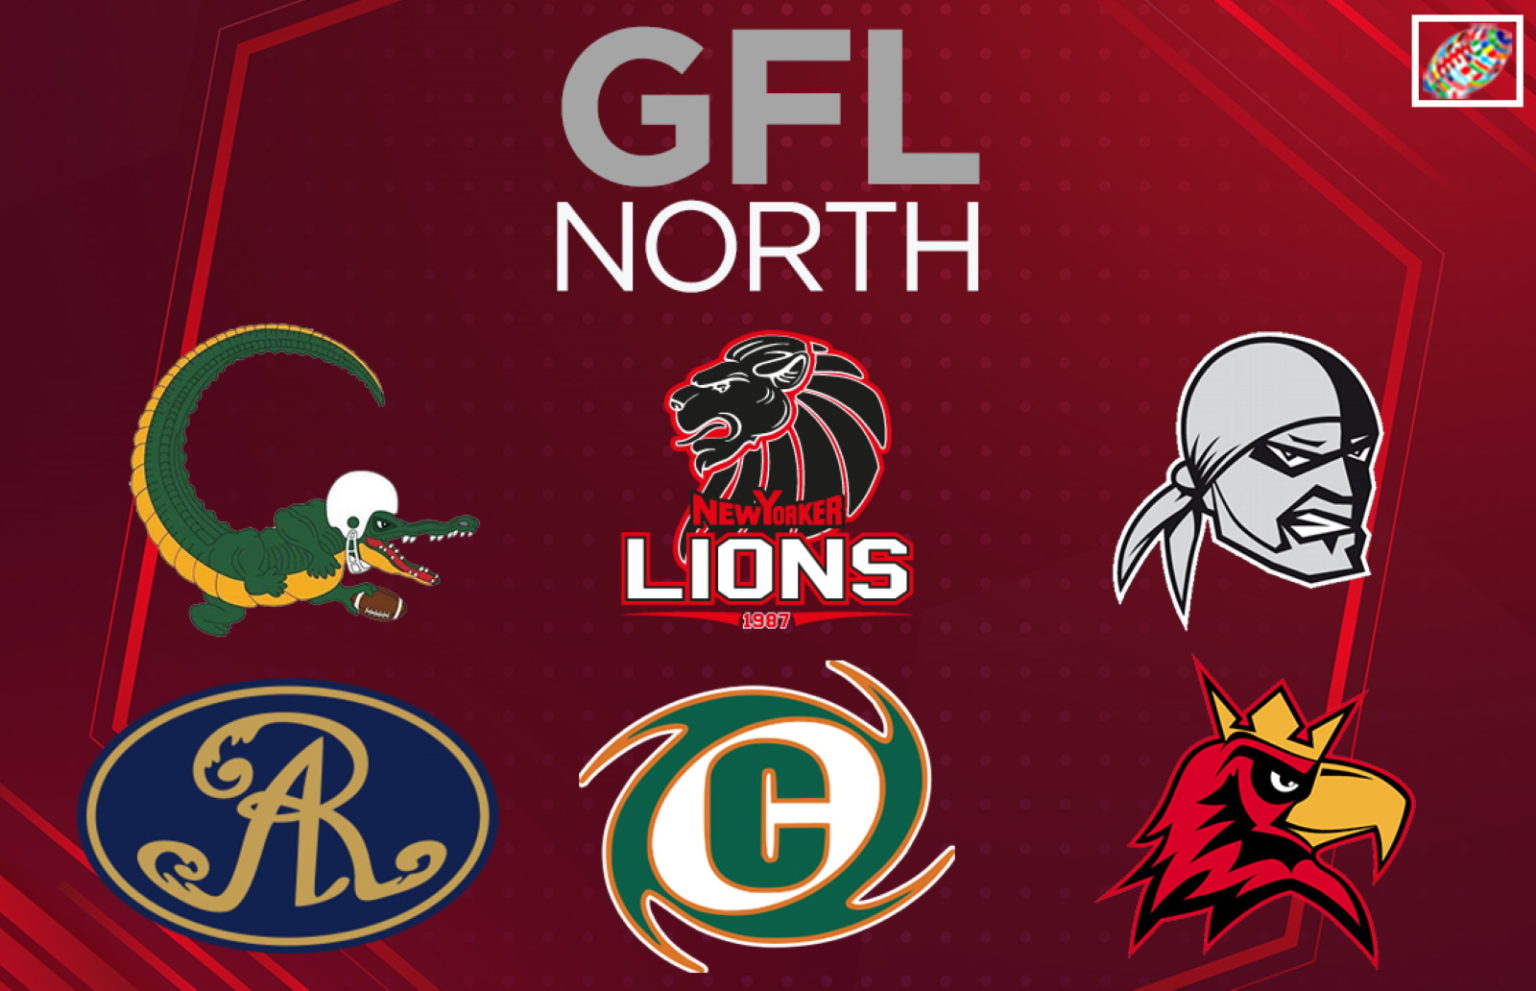 GFL North kicks off 2021 season